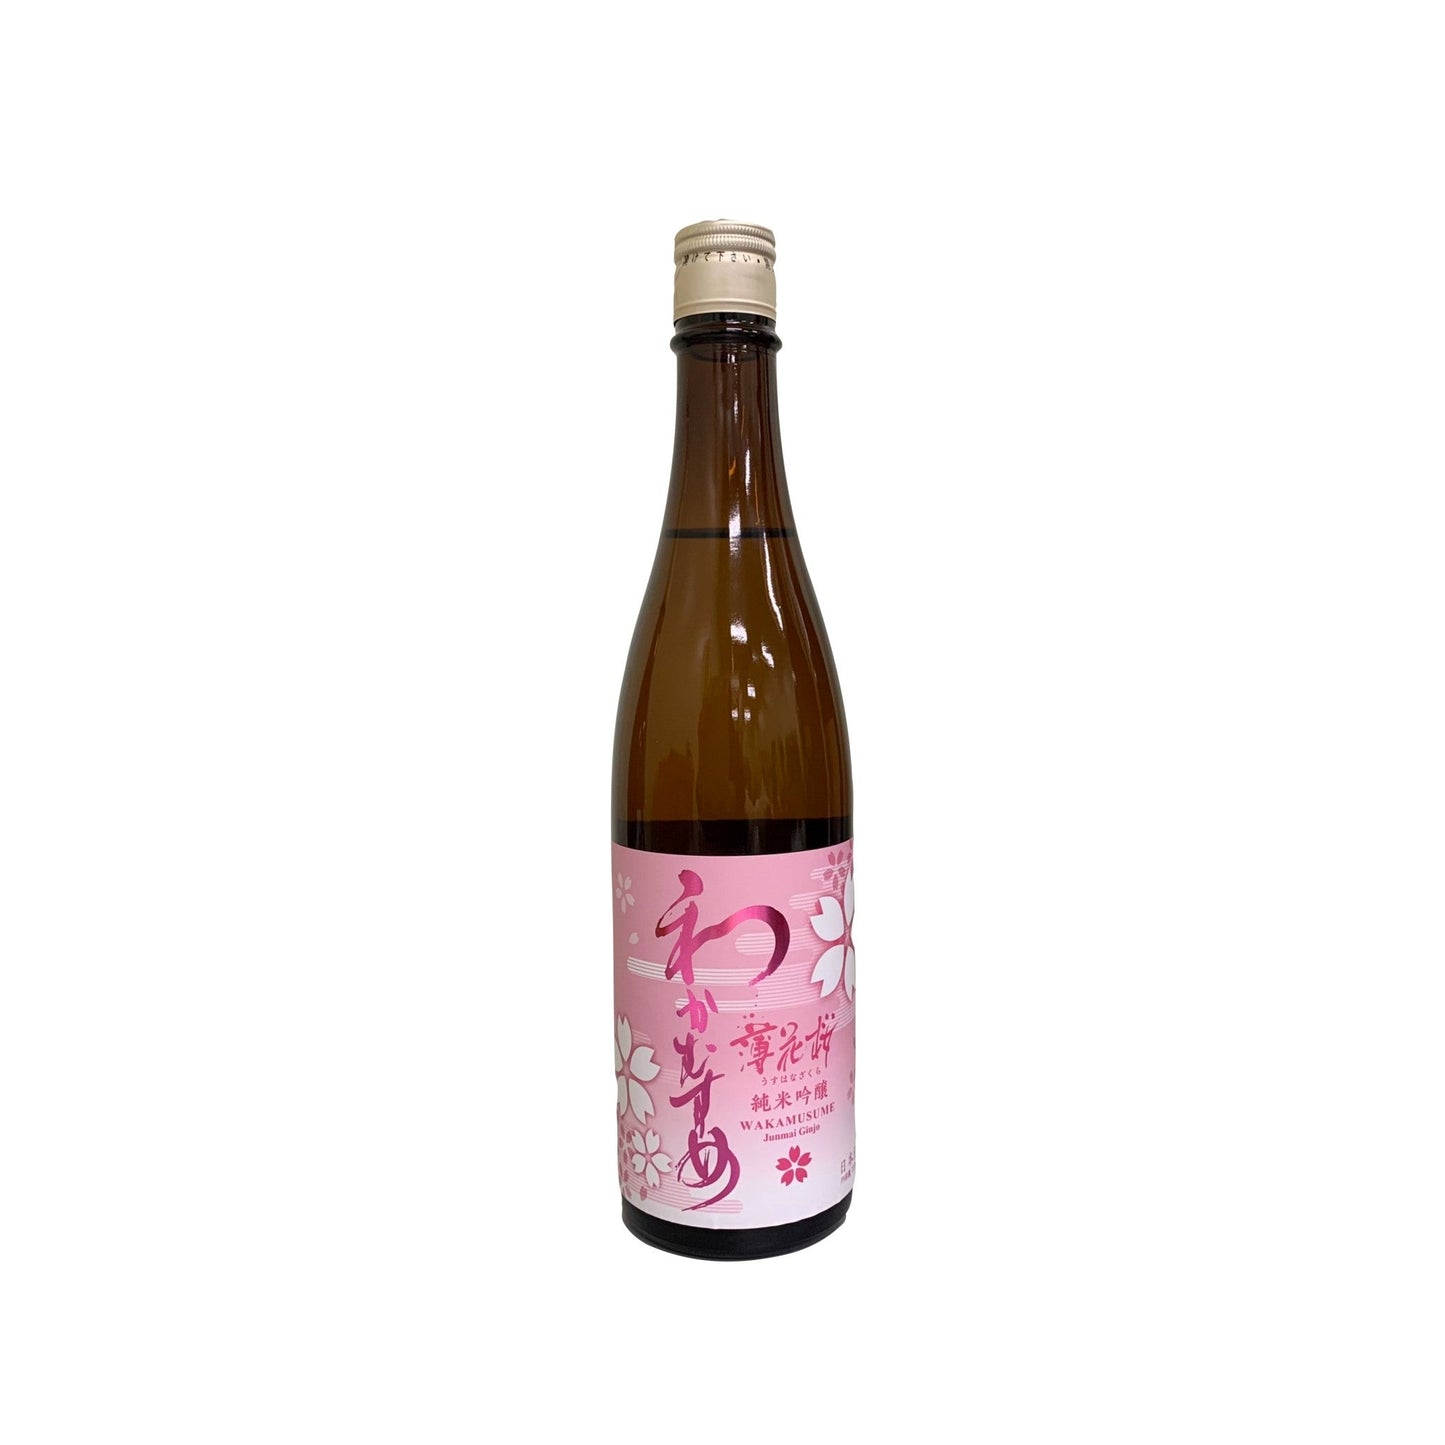 和可娘 薄花櫻 生原酒 / Wakamusume Usuhana Sakura (Pale Cherry Blossom) Nama Junmai Ginjyo - Flavour of Life Online